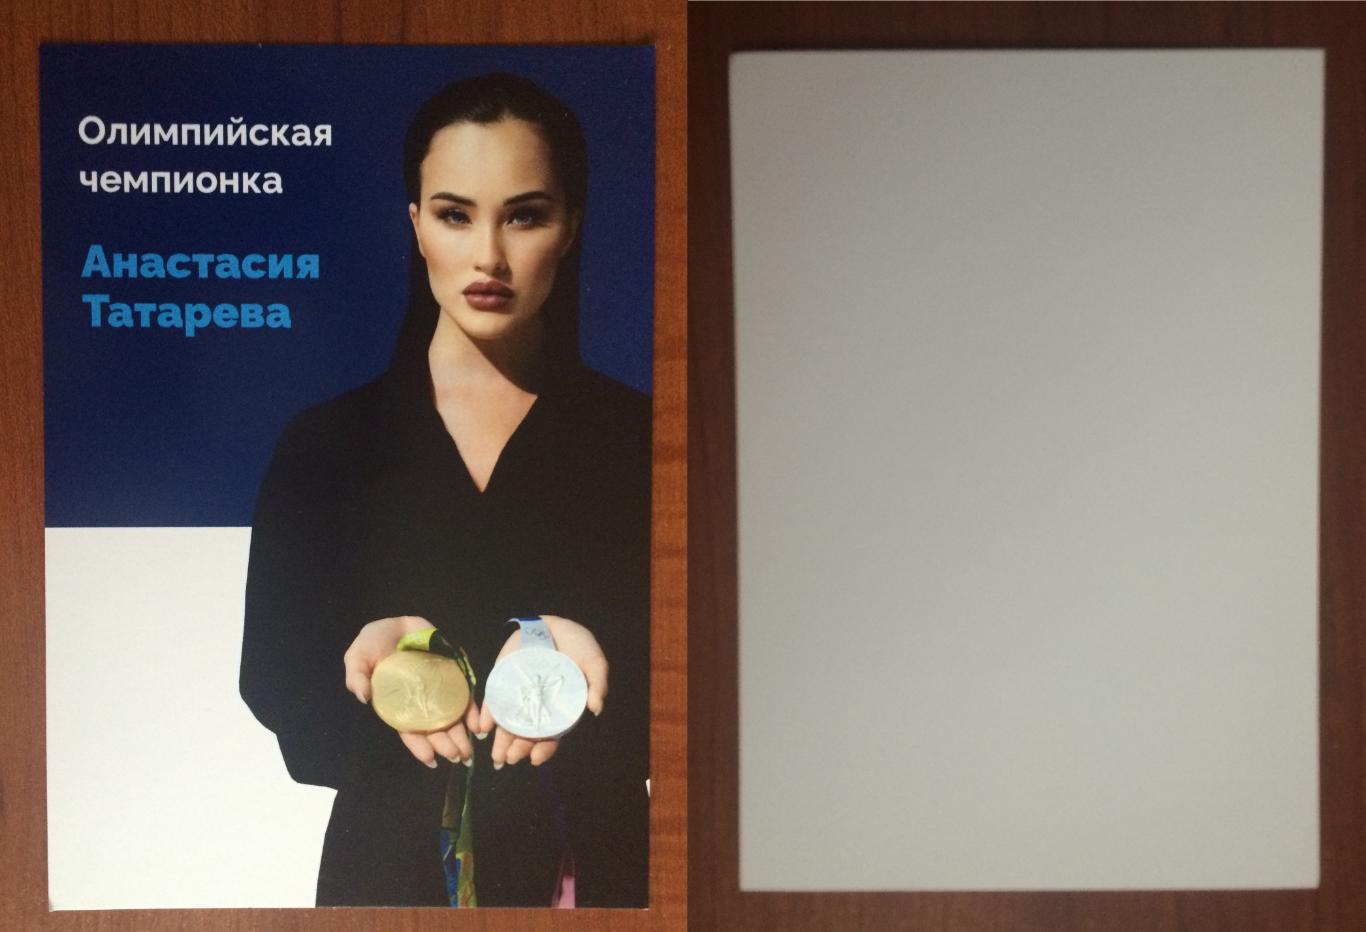 Открытка Анастасия Татарева гимнастика 2016 год Олимпиада золото